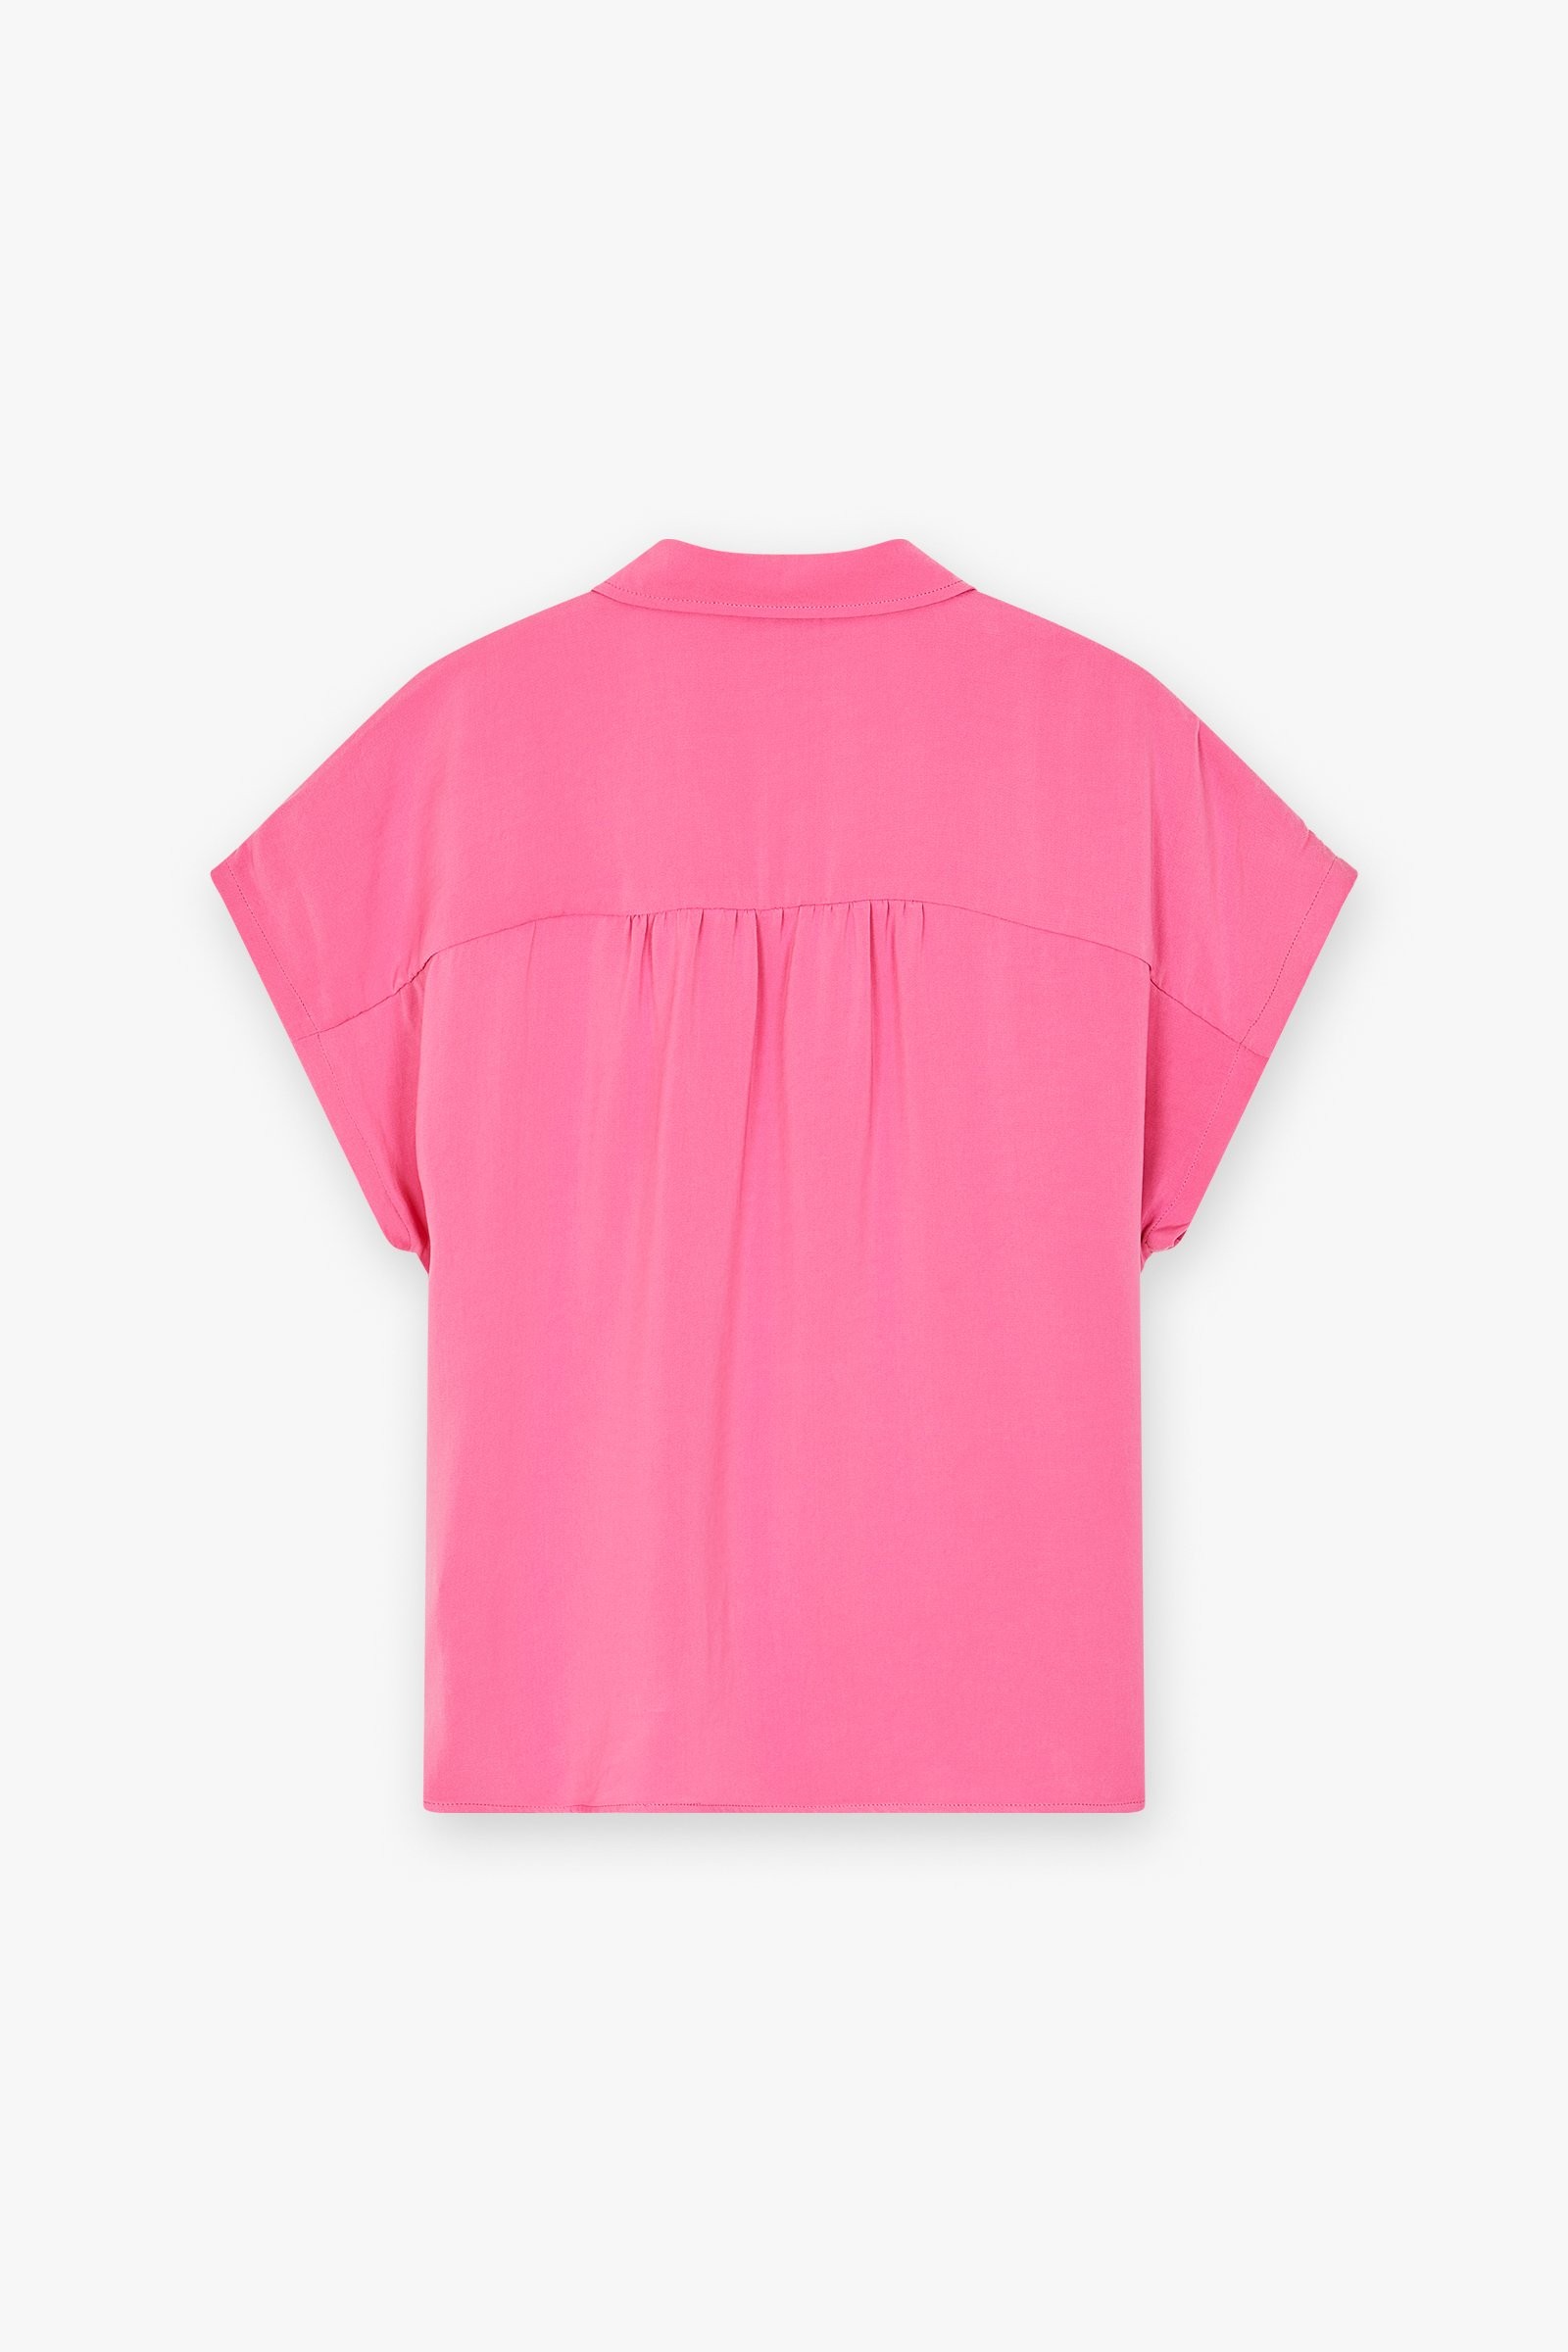 CKS Dames - ECHO - blouse korte mouwen - roze